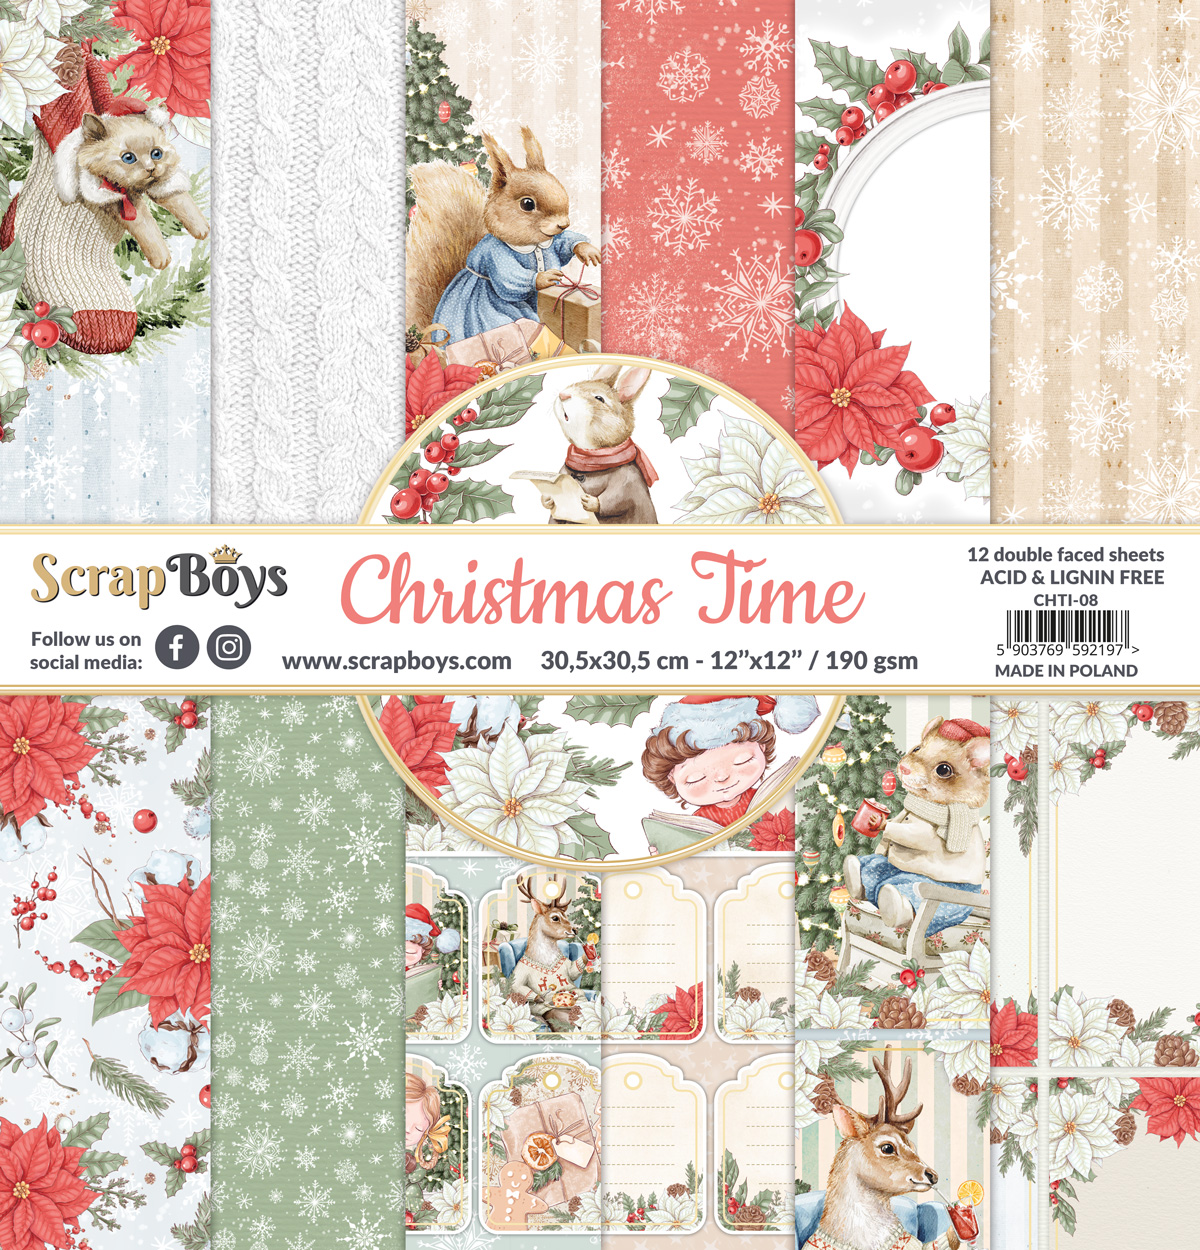  CHTI-08  Zestaw papierów 30,5x30,5 cm Scrap Boys - Christmas Time